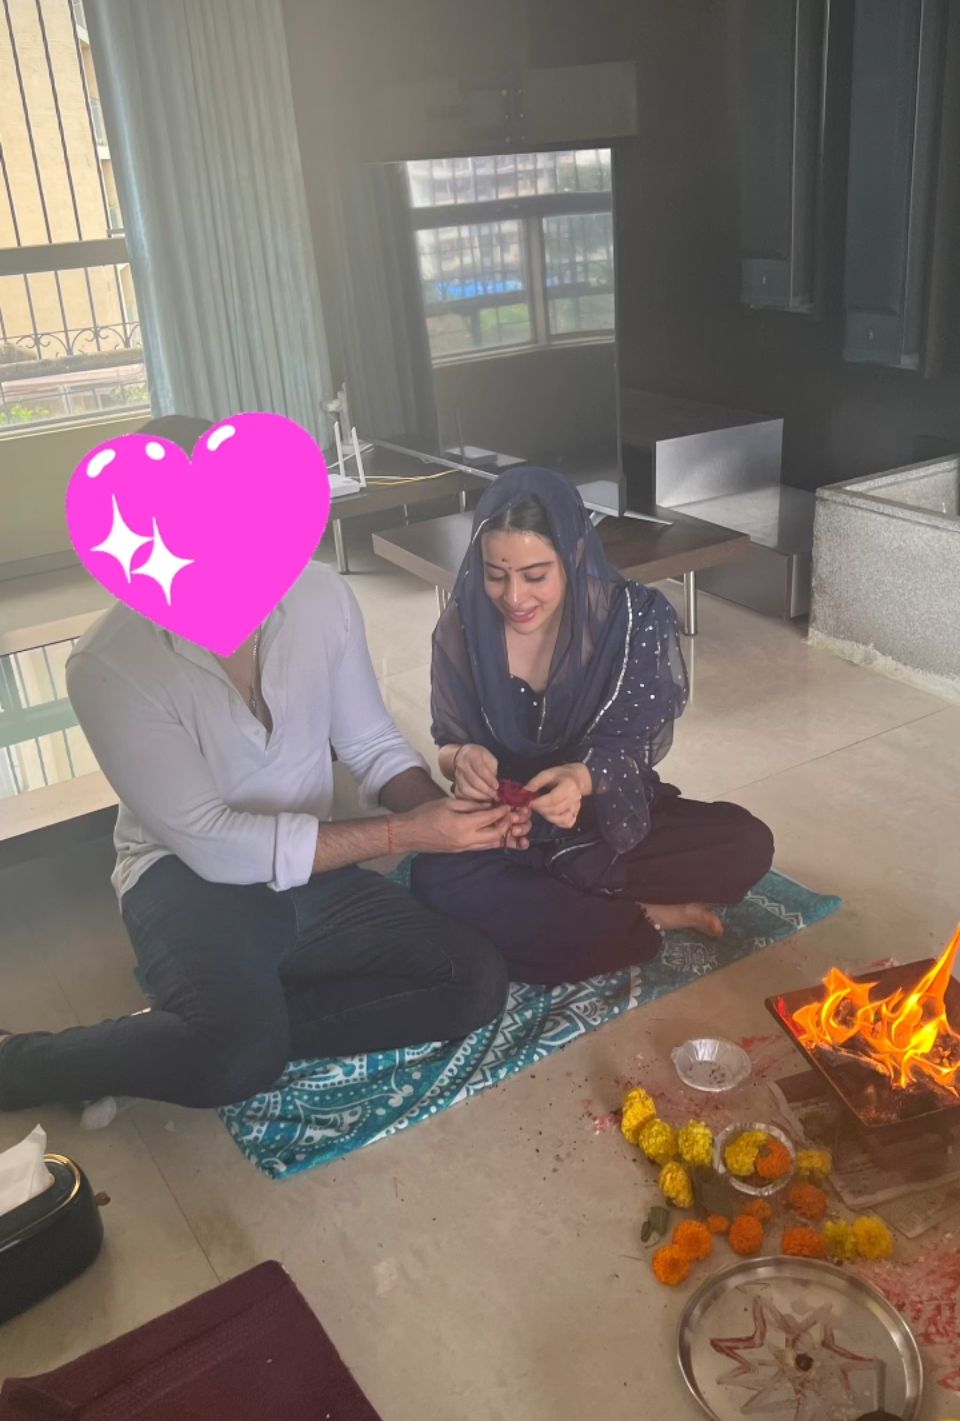 Uorfi Javed's engagement photo